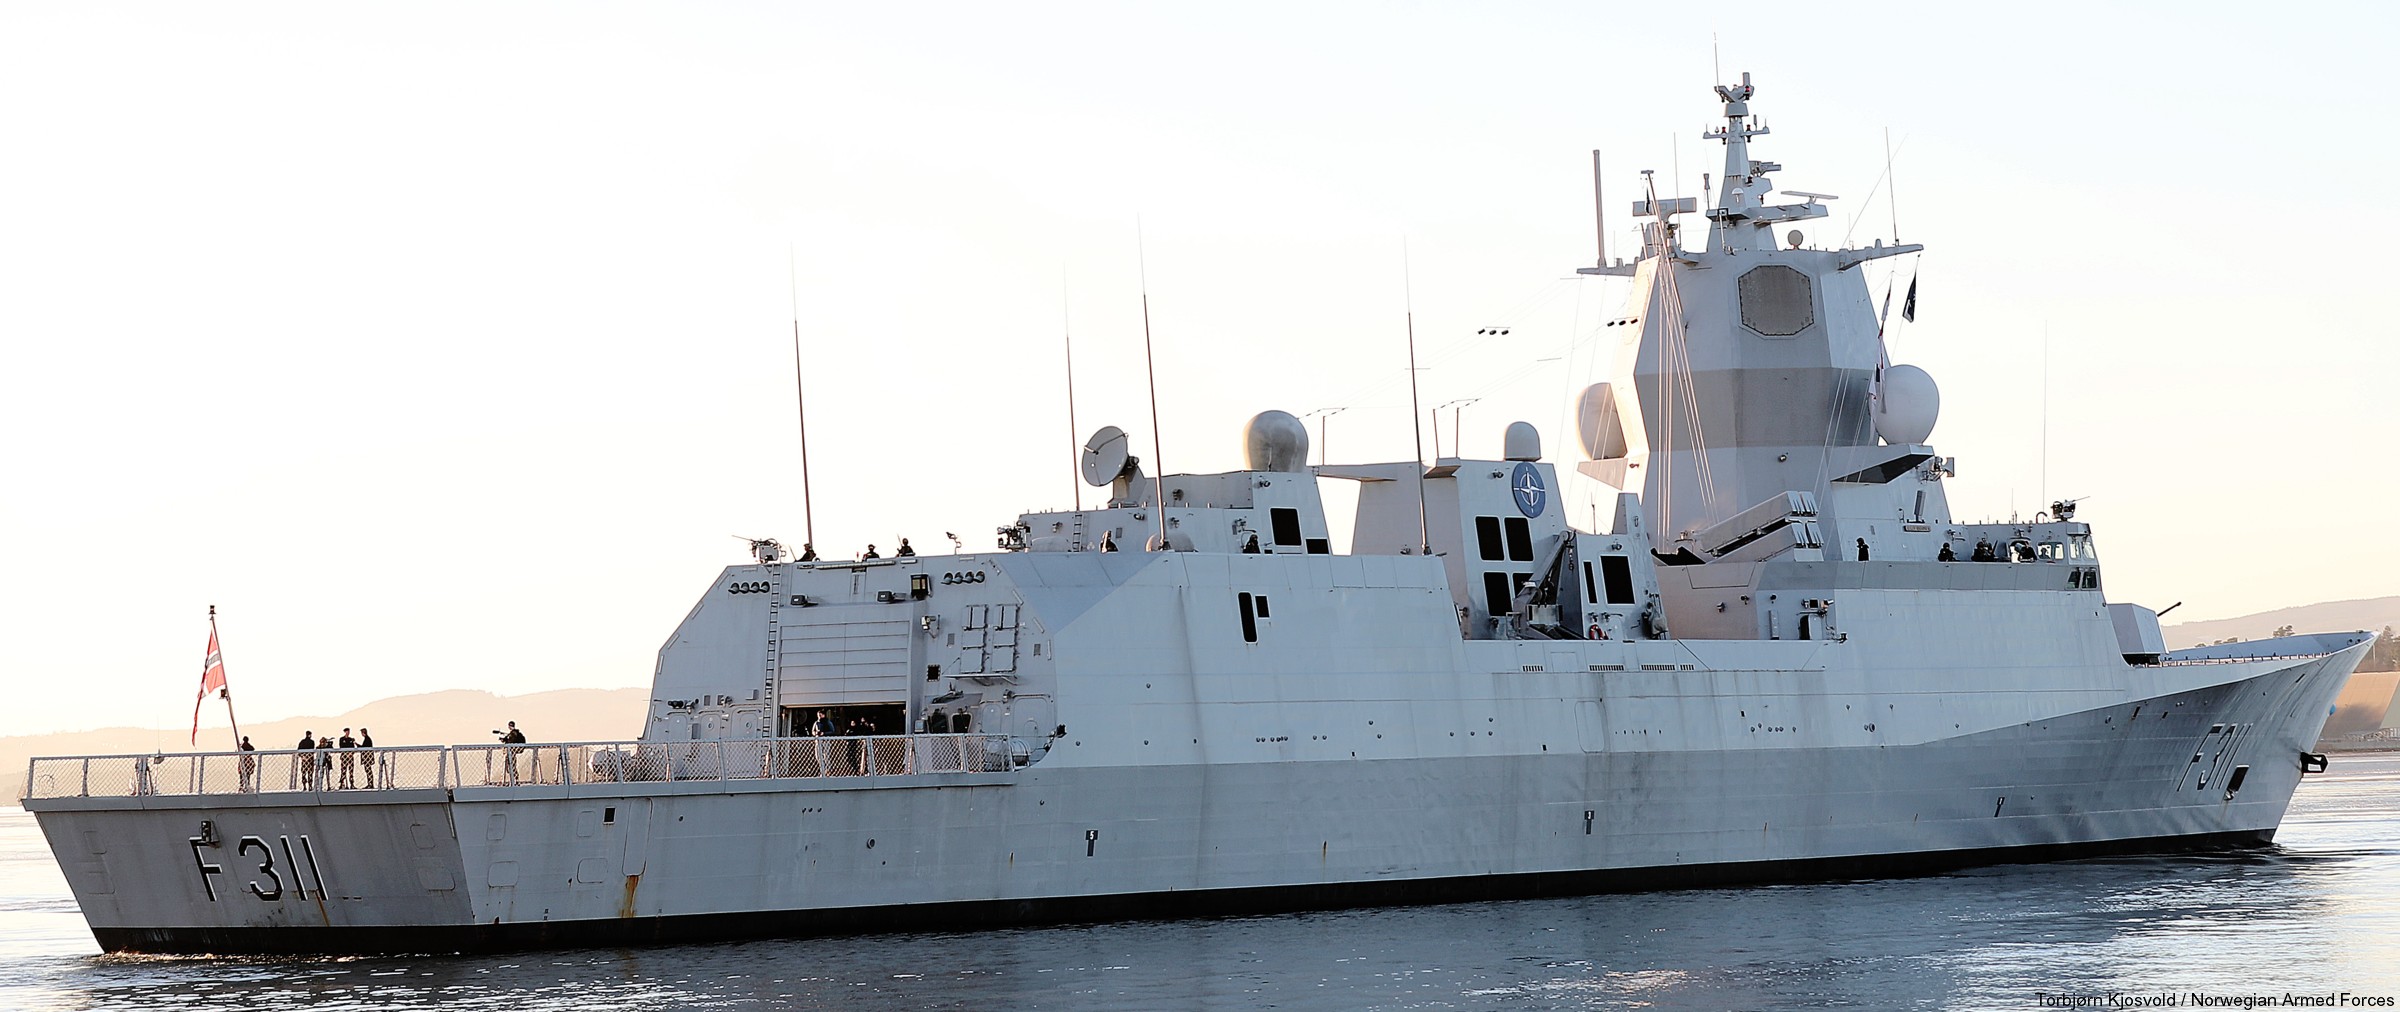 f-311 hnoms roald amundsen knm nansen class frigate royal norwegian navy sjoforsvaret 49